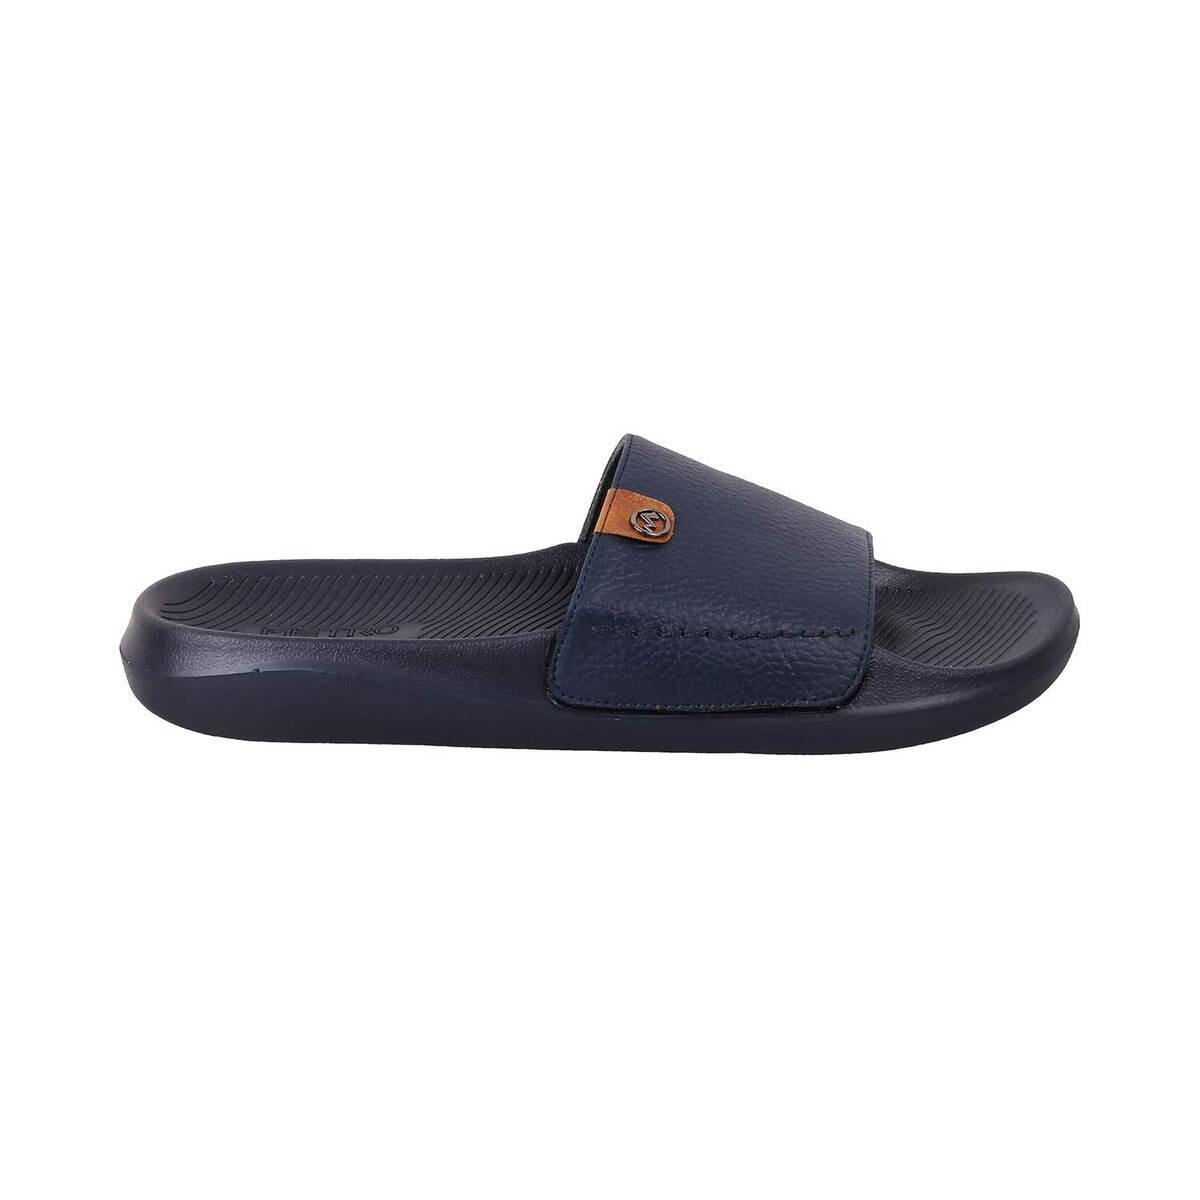 Buy Metro Men Blue Casual Slippers Online | SKU: 207-34-45-40 - Metro Shoes